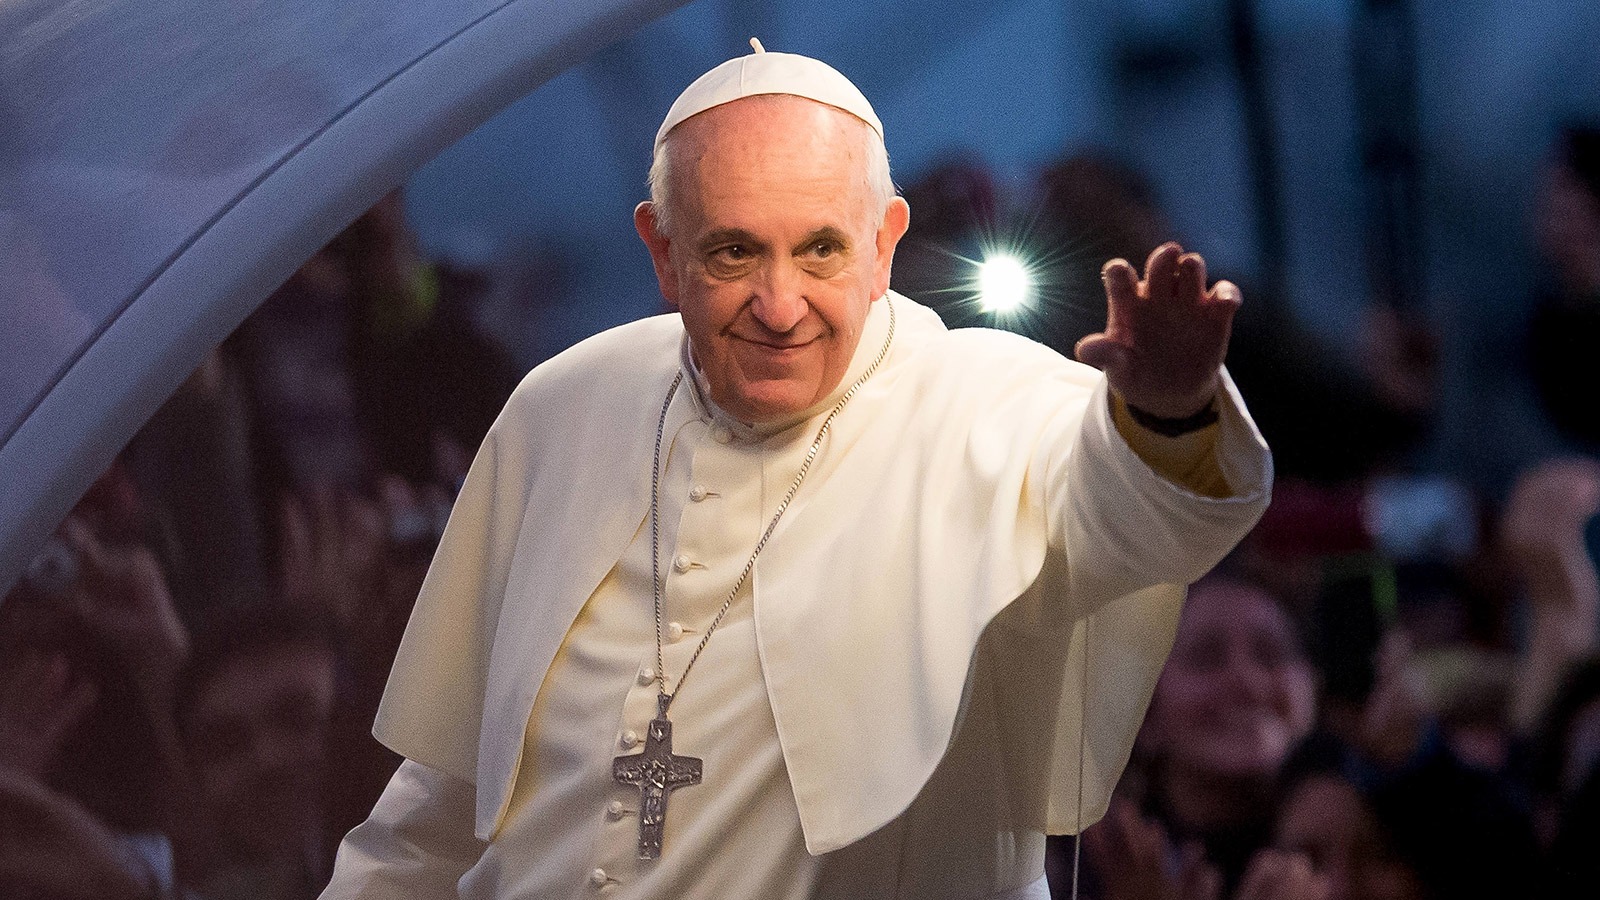 Франциск (папа Римский). Понтифик папа Римский Франциск. Франциск (папа Римский) фото. Франциск 1 папа Римский. Правило папы римского